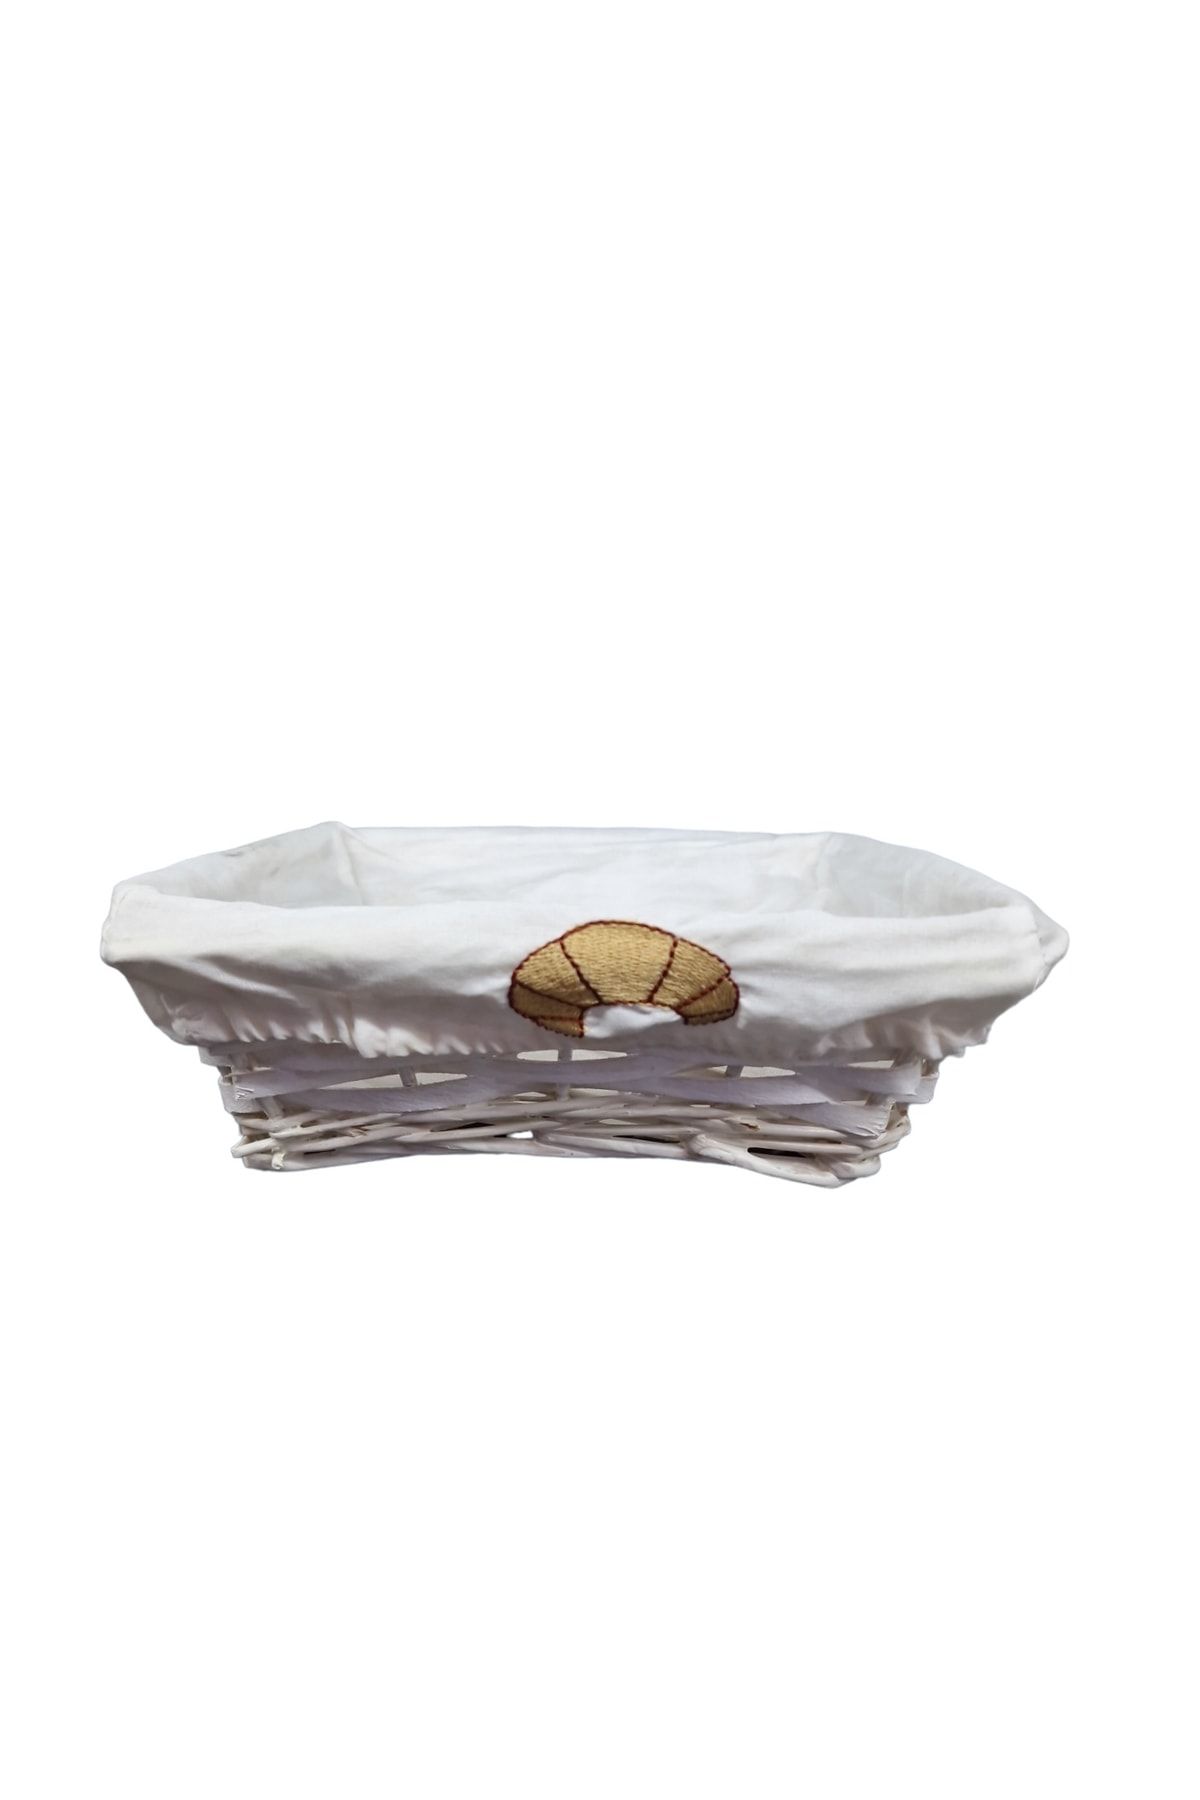 Matar Endüstriyel Mutfak Ekipmanları Beyaz Hasır Kare Bezli Ekmek Sepeti 22*22cm